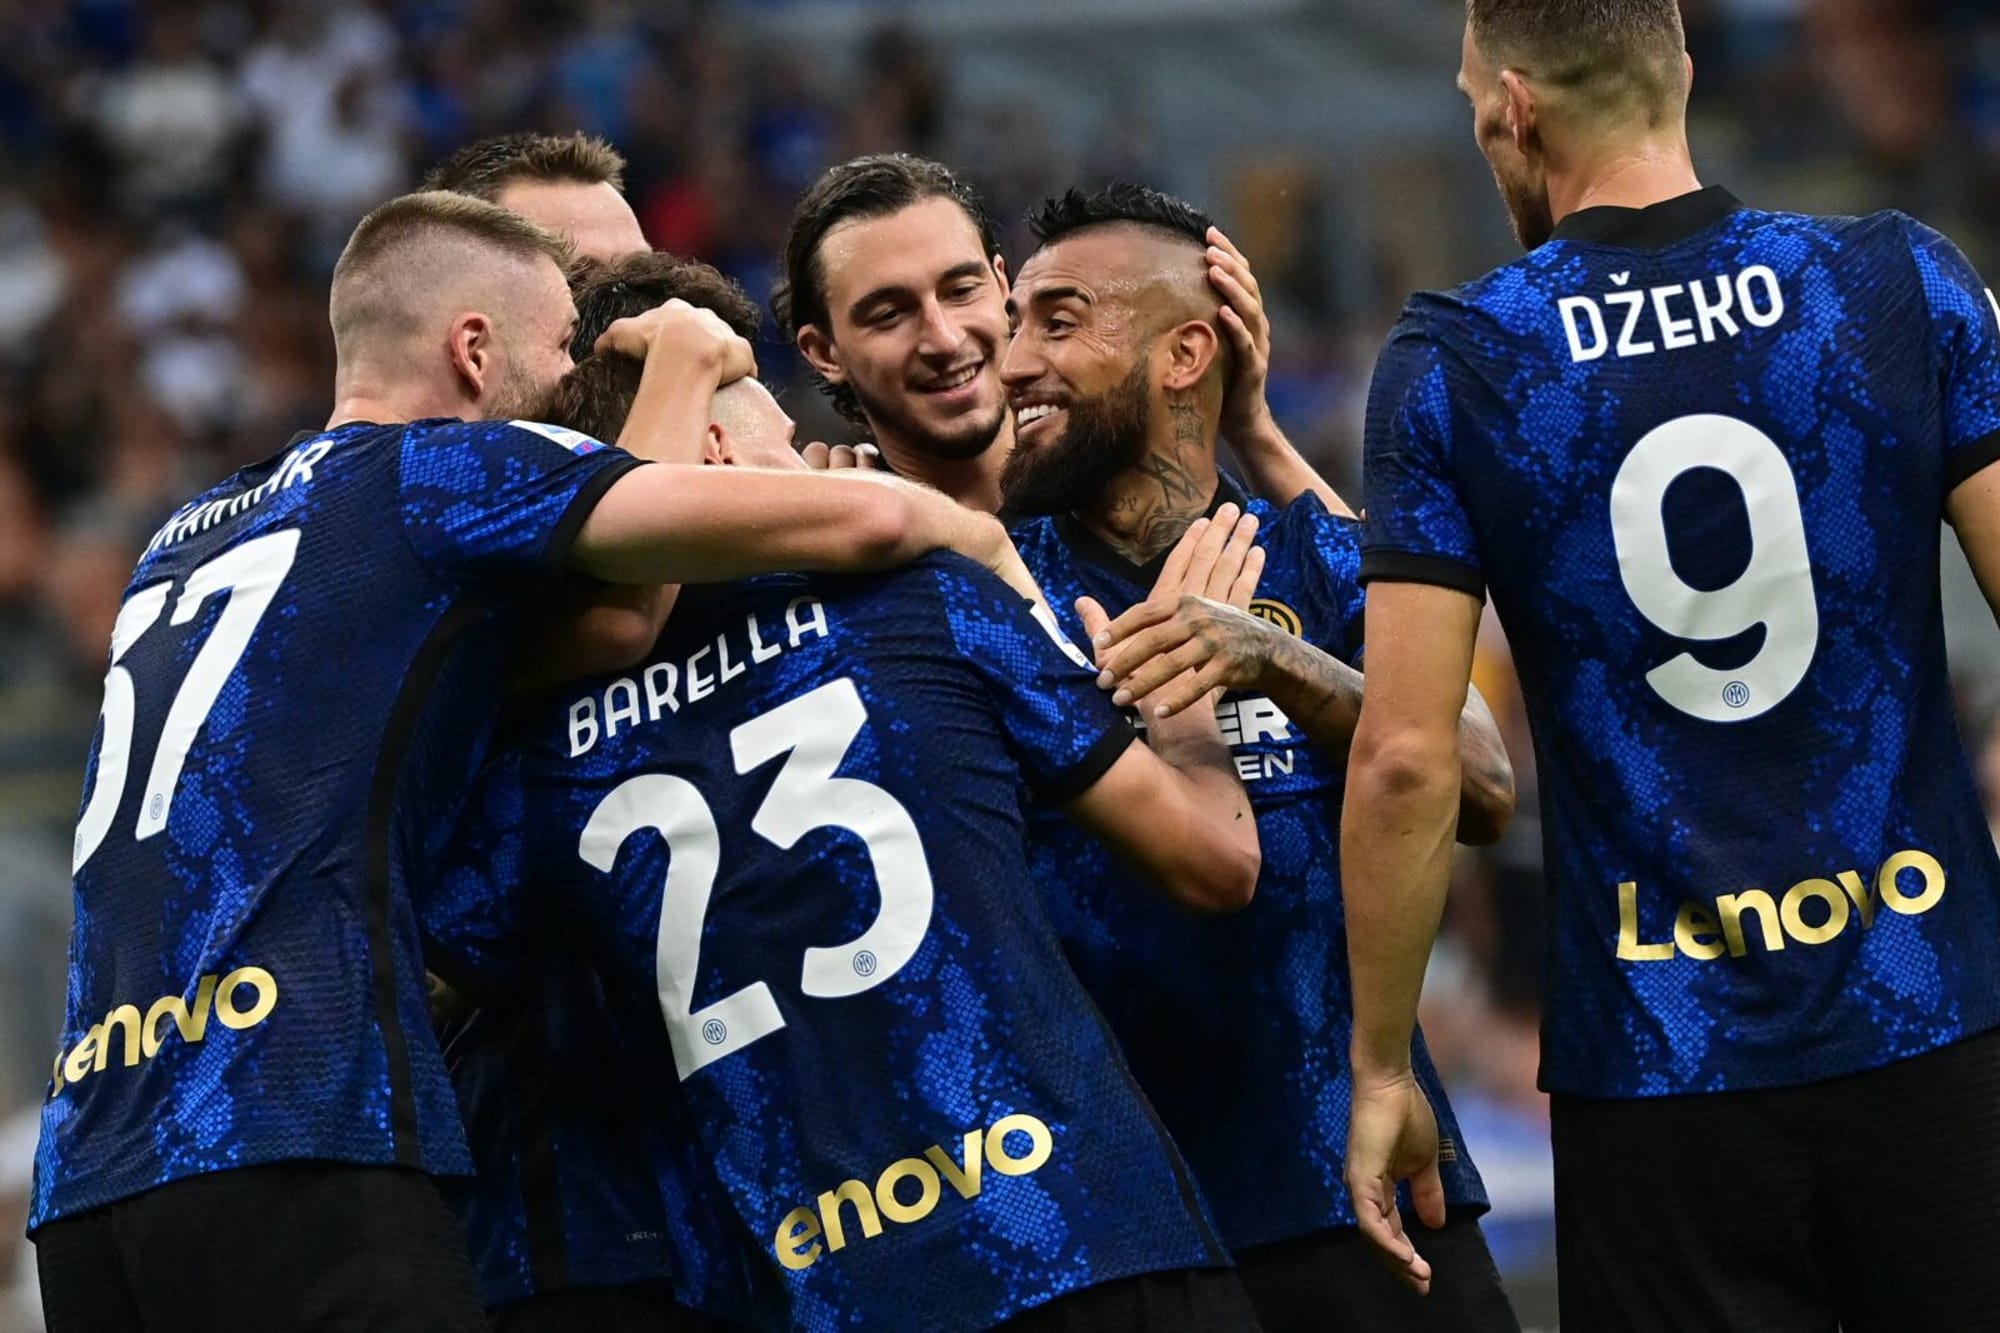 Serie A round-up: Lazio edge out Cagliari after Pedro strike